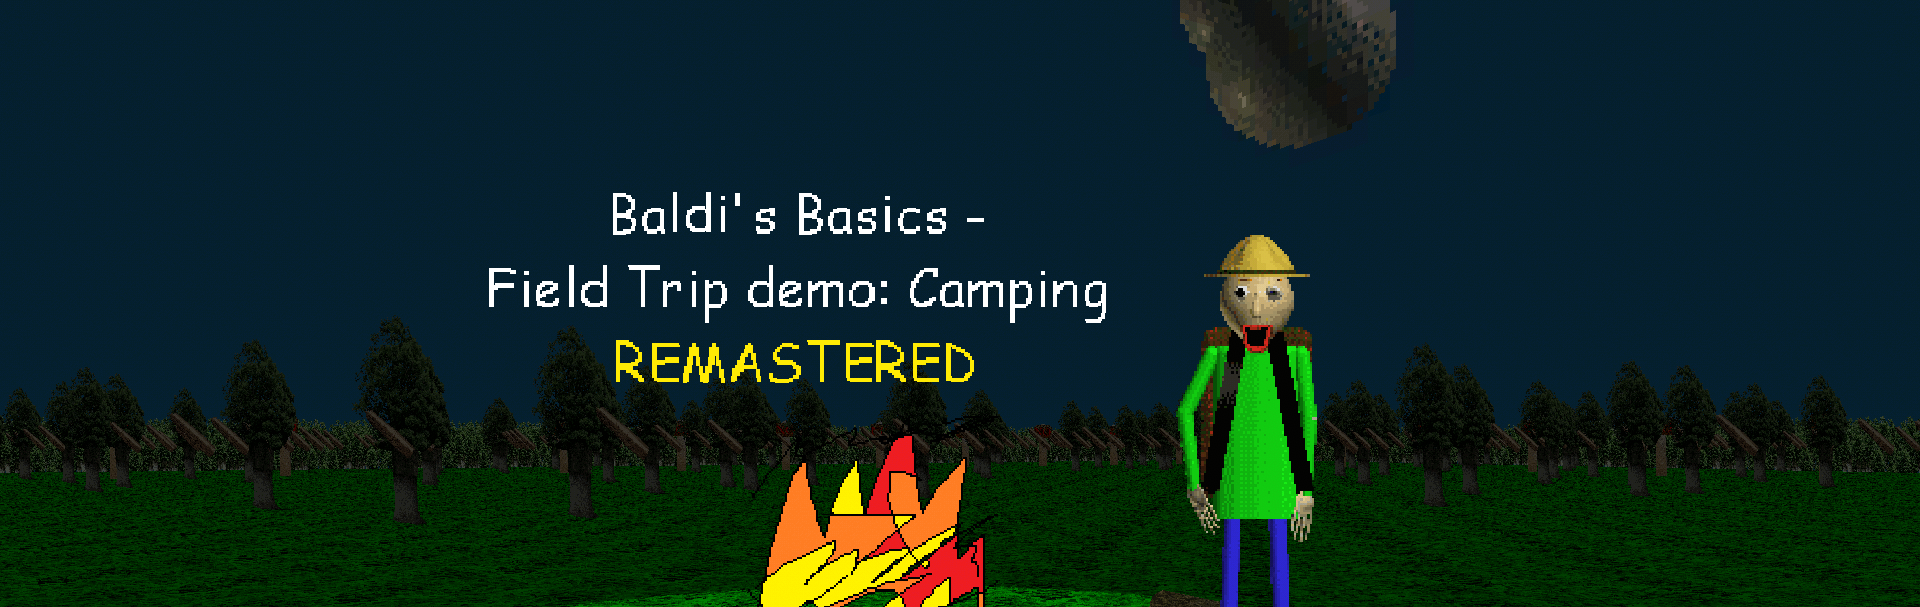 Baldi's basic Field Trip in Camping - Microsoft Apps